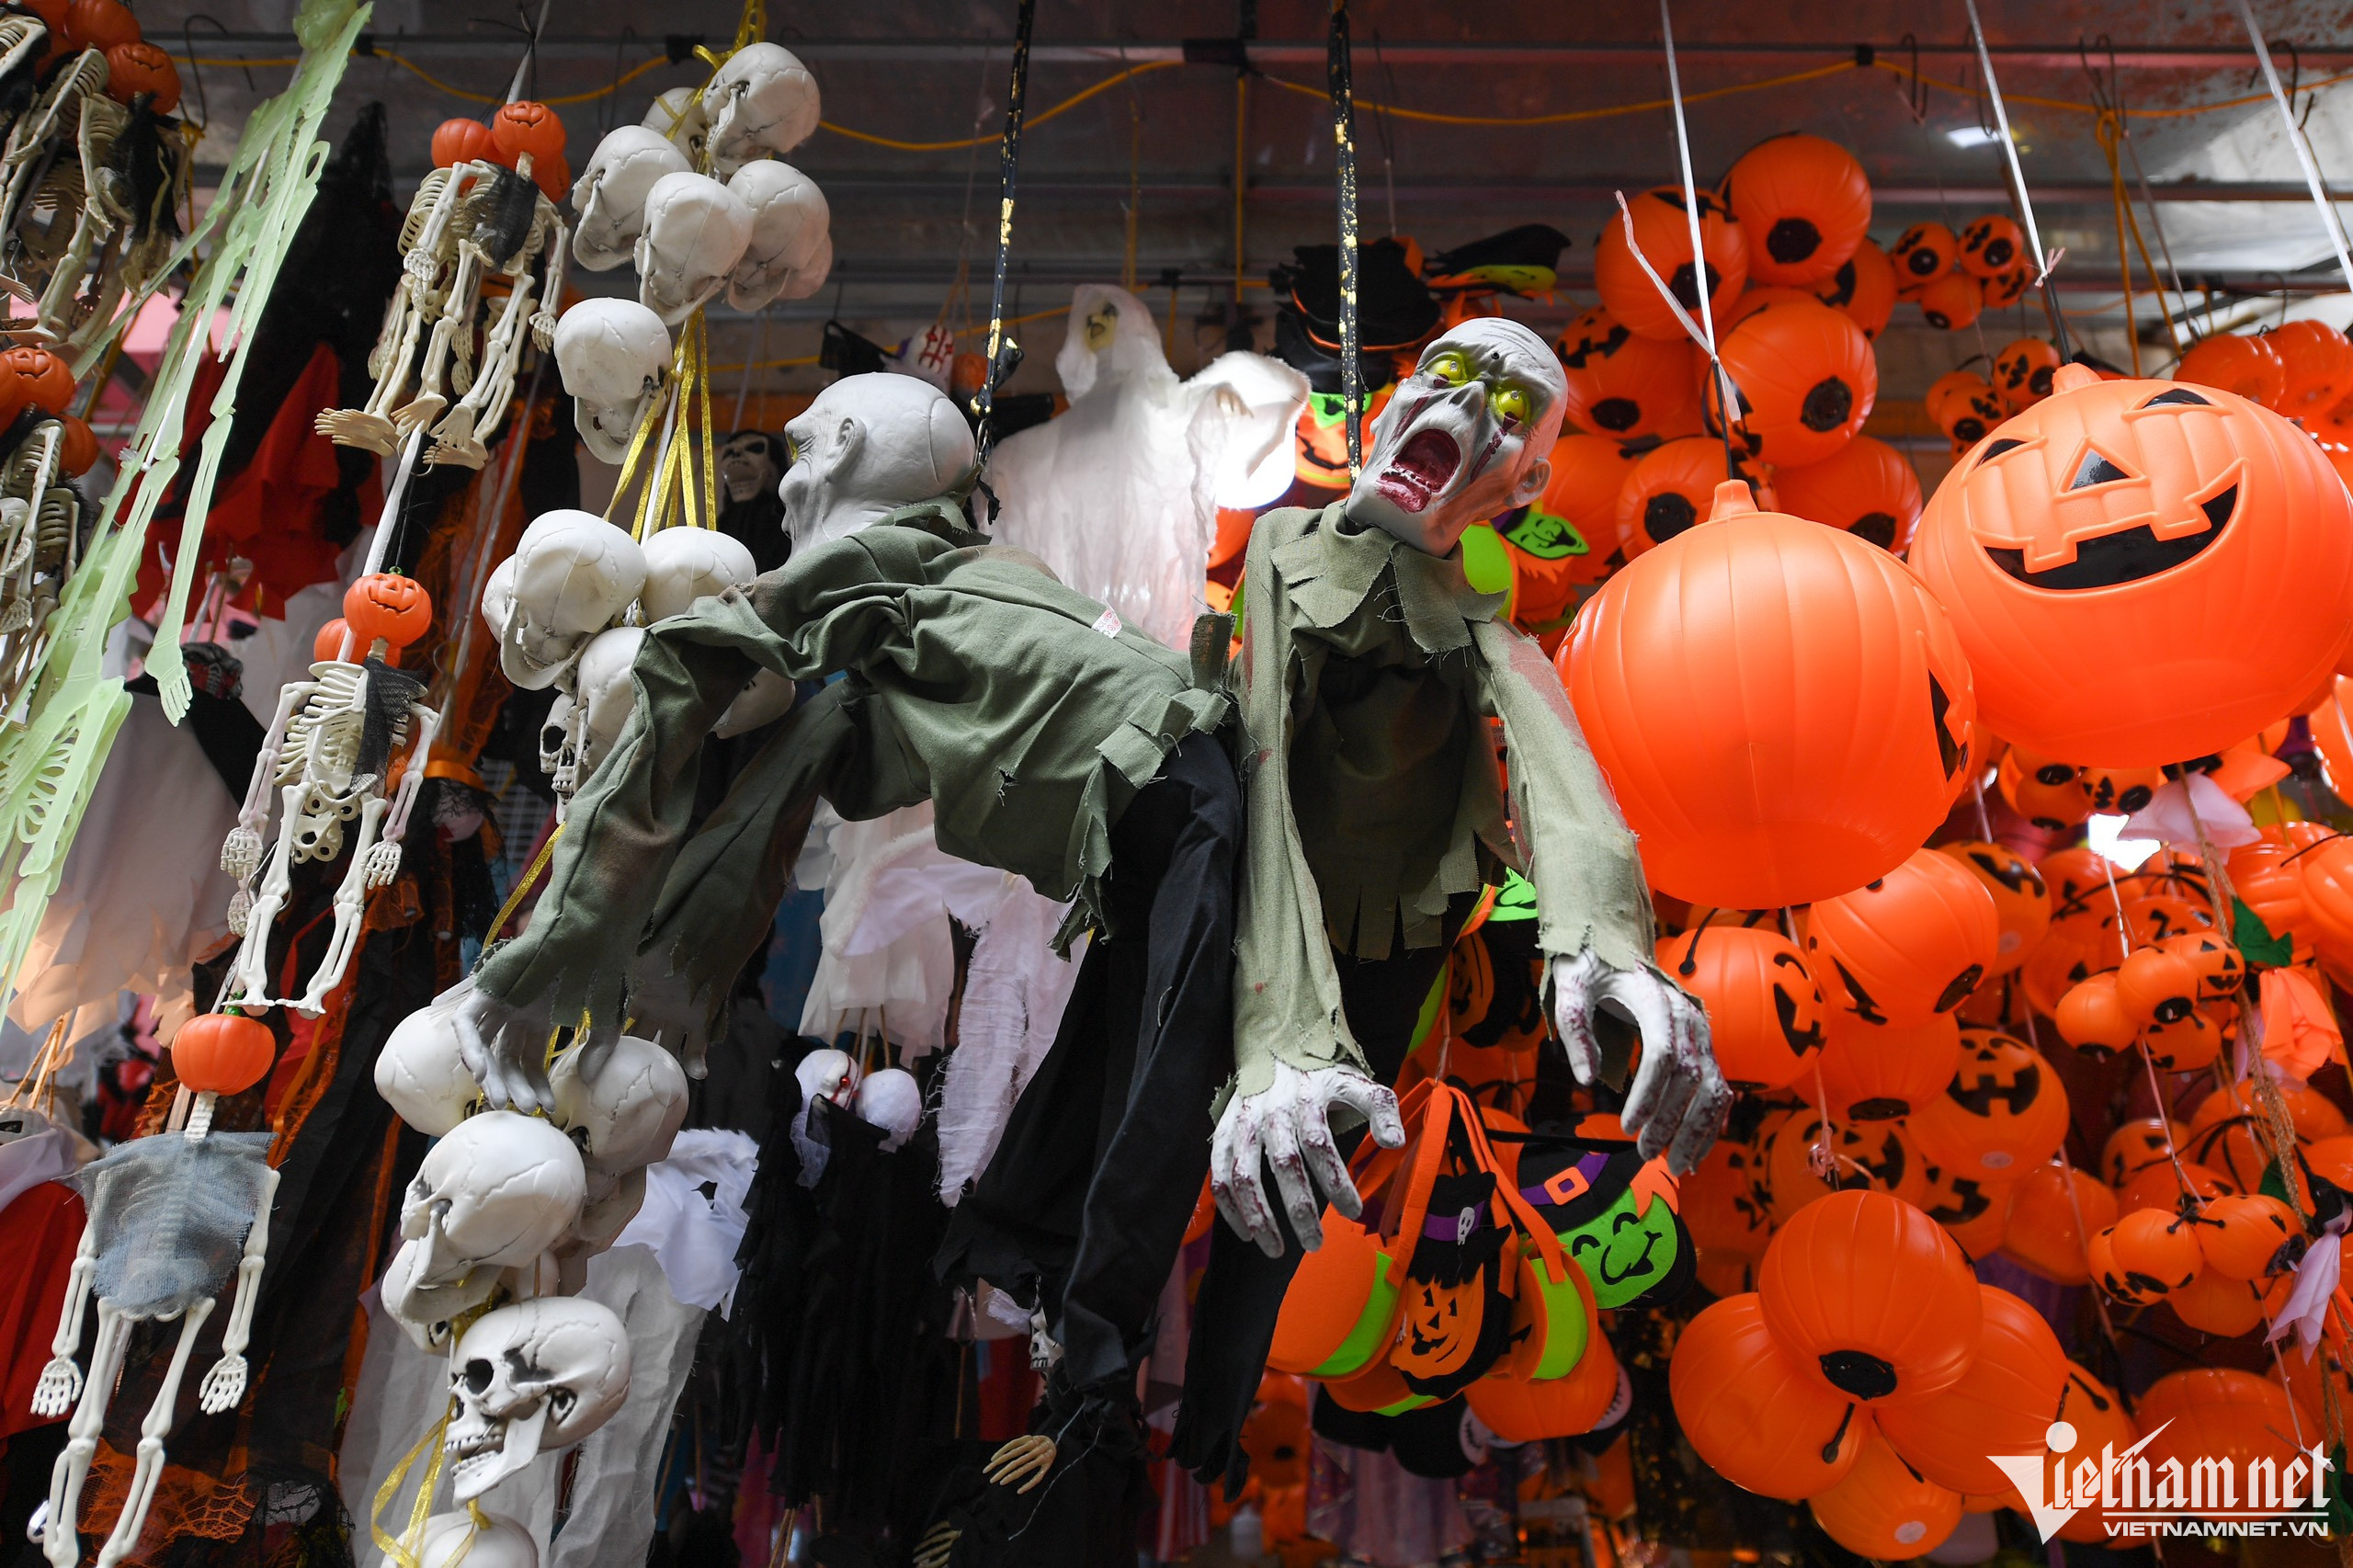 Sôi động thị trường Halloween tại TP Hồ Chí Minh  baotintucvn